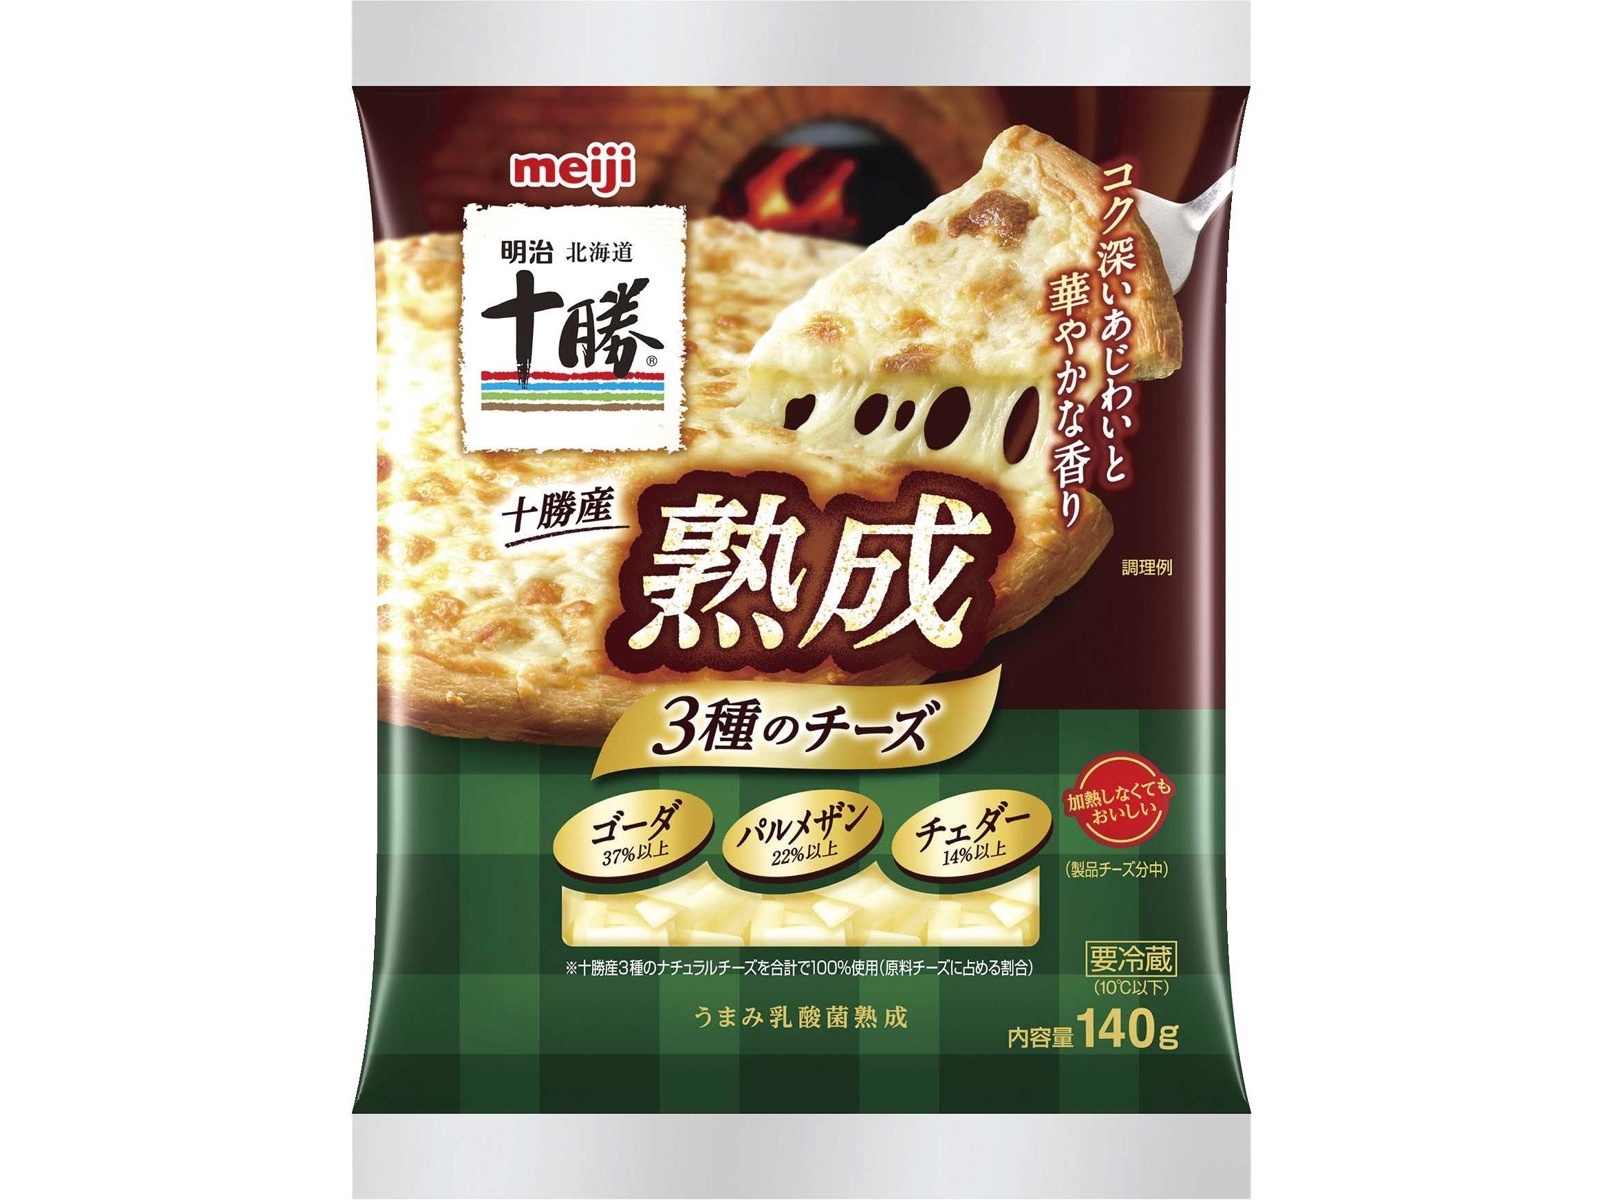 明治 北海道十勝 熟成3種のチーズ 140g| コープこうべネット